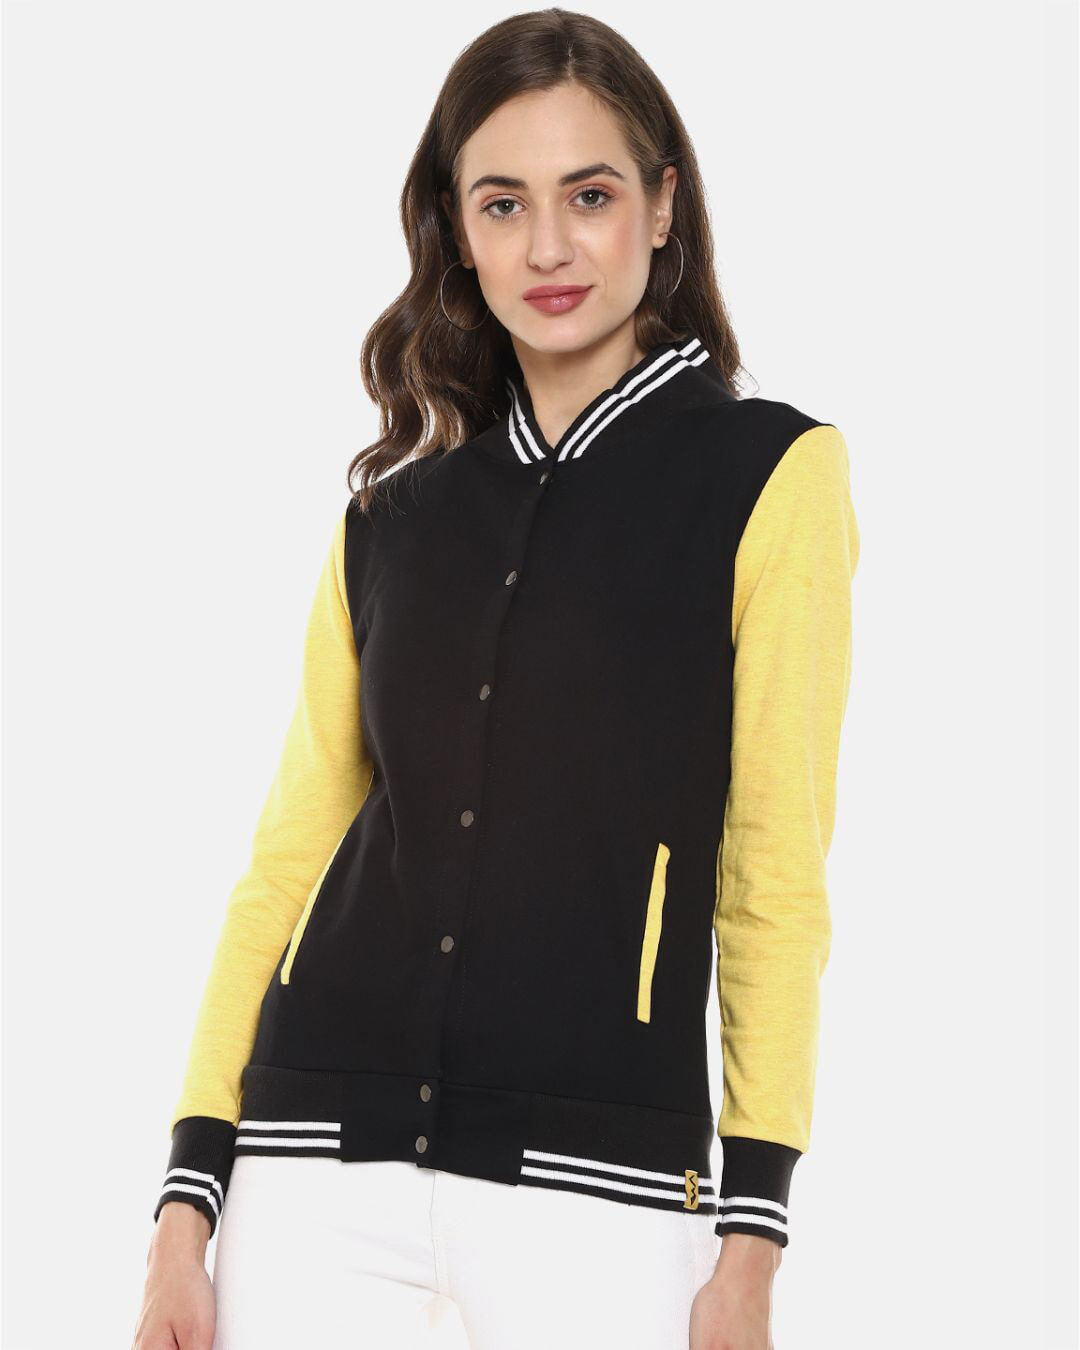 Black Varsity Jacket Black Leather Sleeves and Yellow Stripes - Jack N  Hoods | Jacks n Hoods